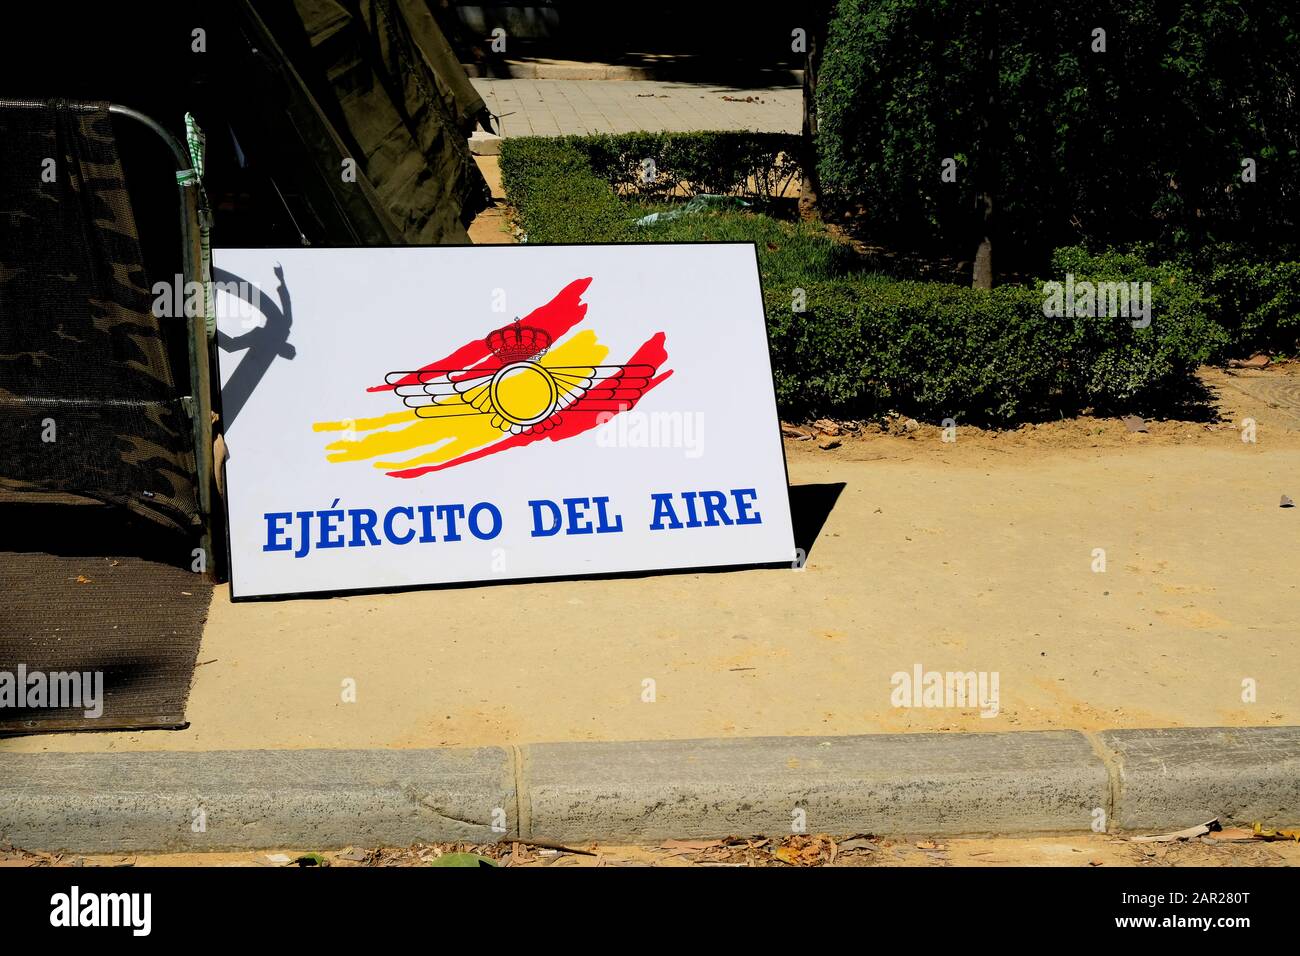 Ejército del aire signe, pour l'armée de l'air espagnole, à la célébration de la Journée des forces armées à Séville, Espagne, le 1er juin 2019 Banque D'Images